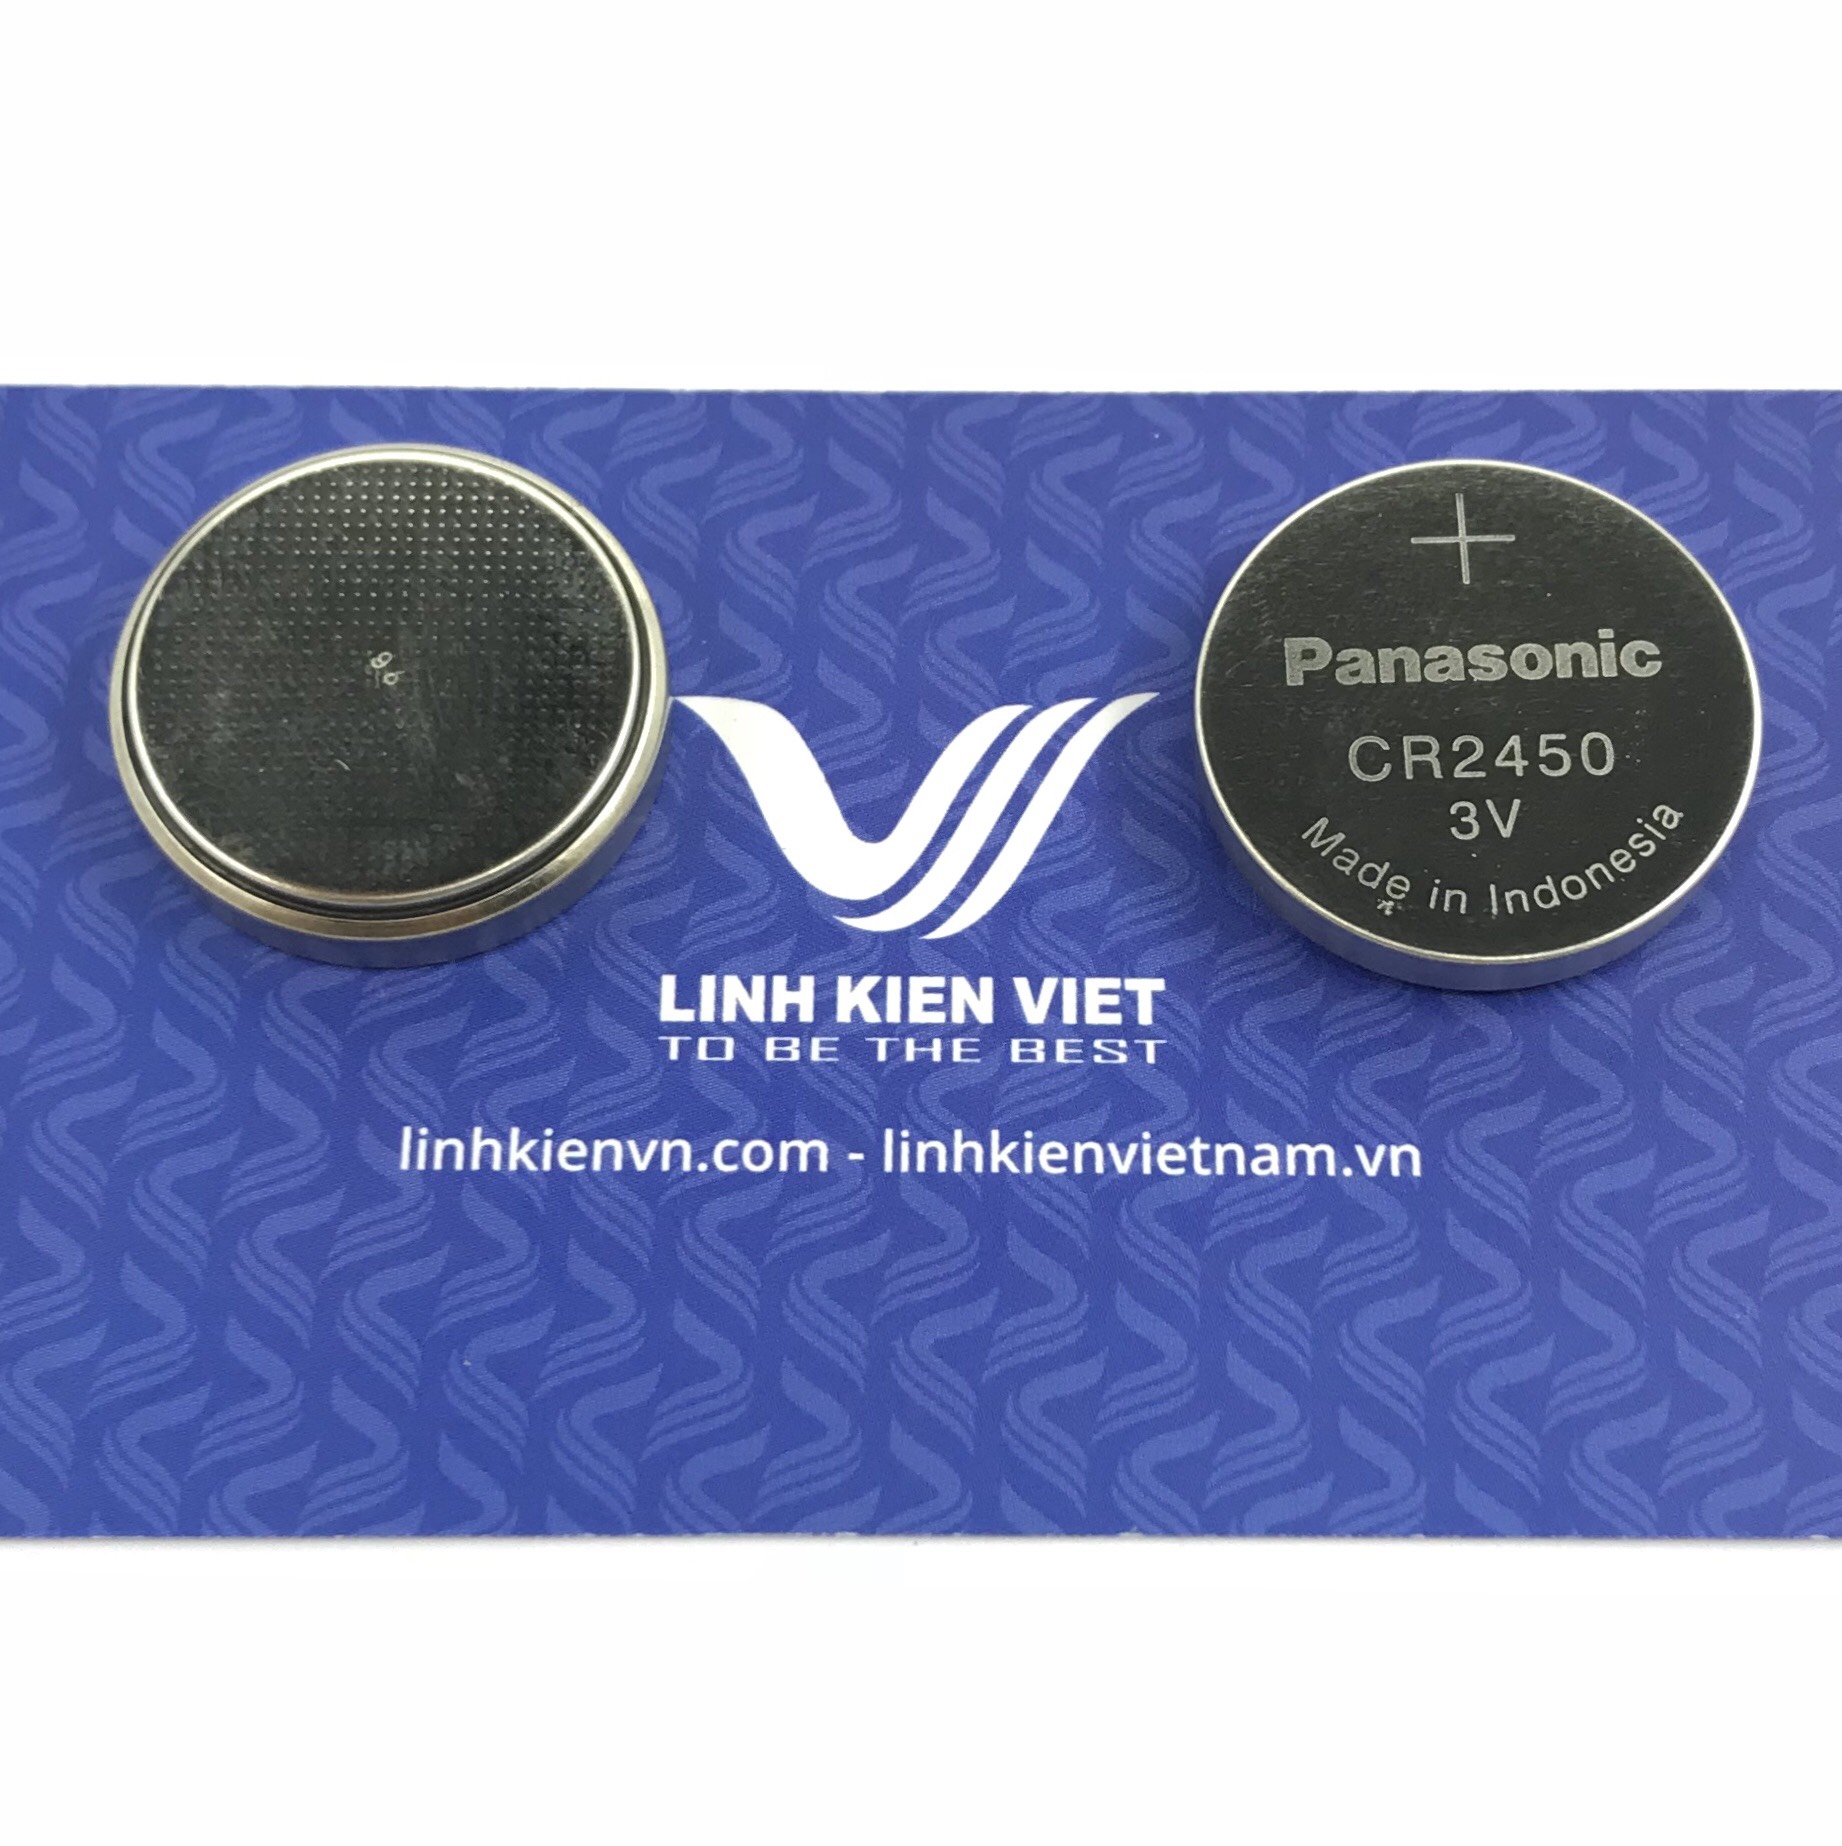 Pin CR2450 3V / chính hãng Panasonic - K5H22